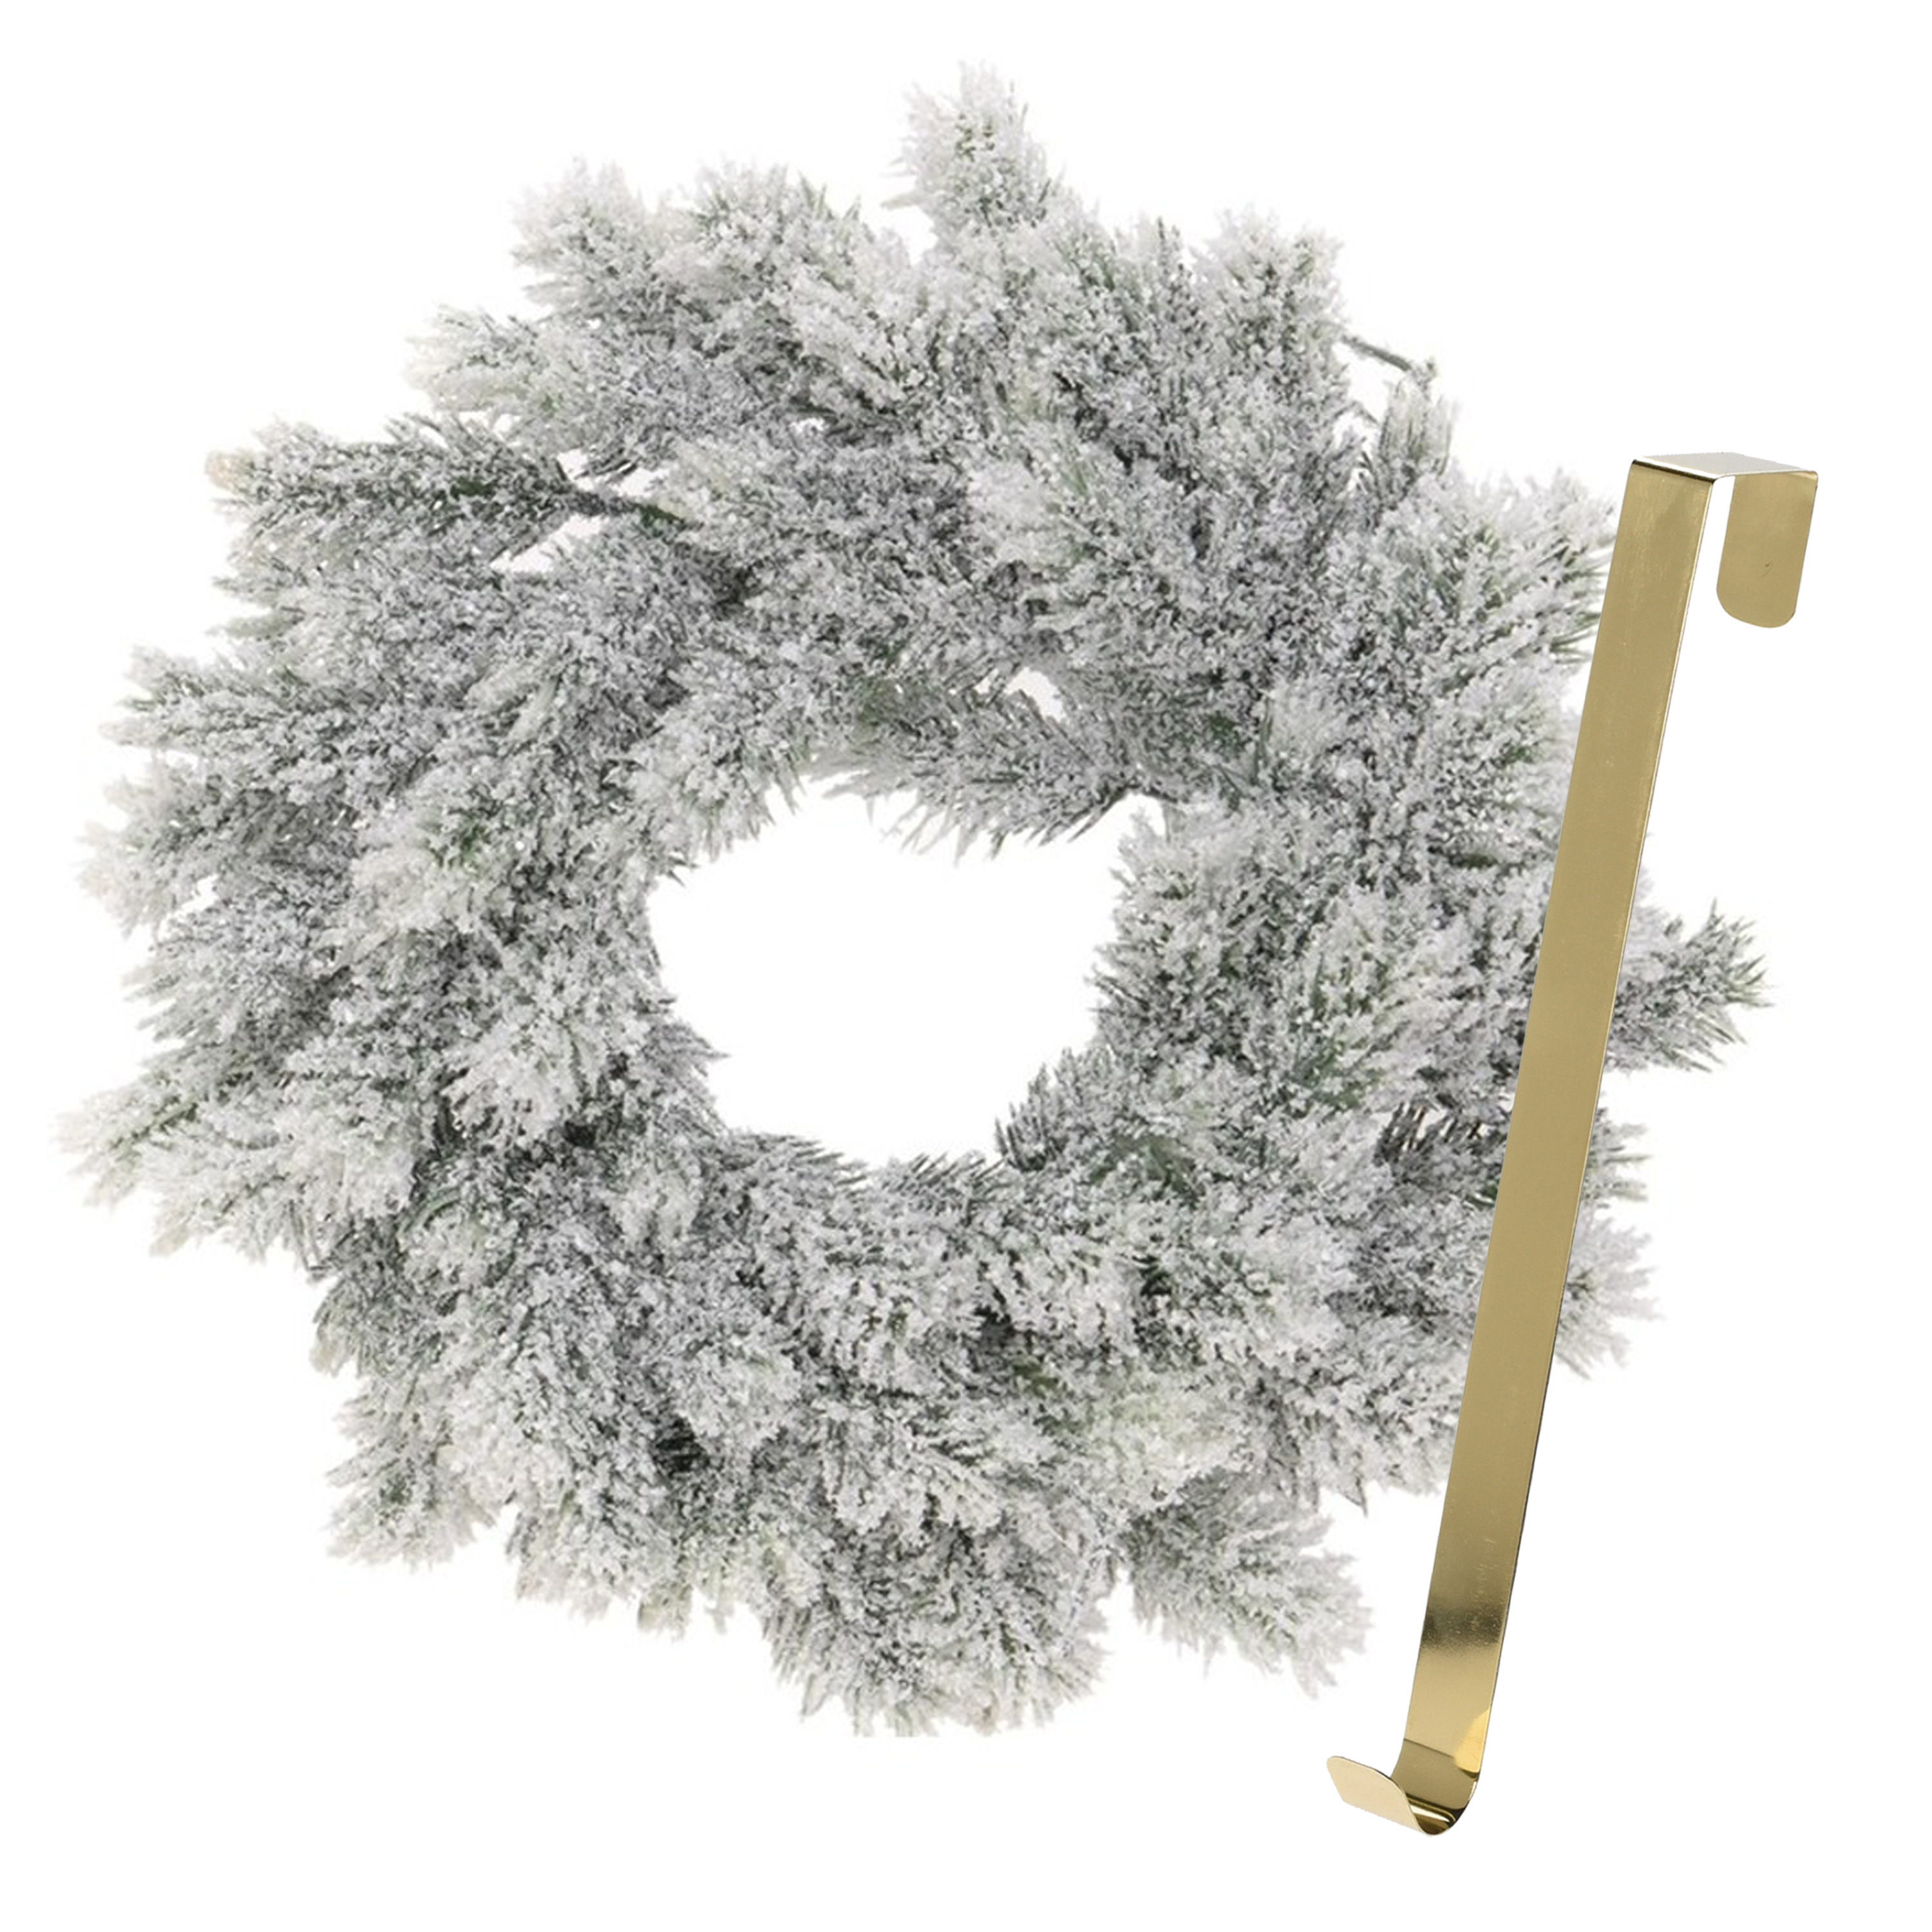 Kerstkrans 35 cm groen besneeuwd met gouden hanger-ophanghaak kerstversiering